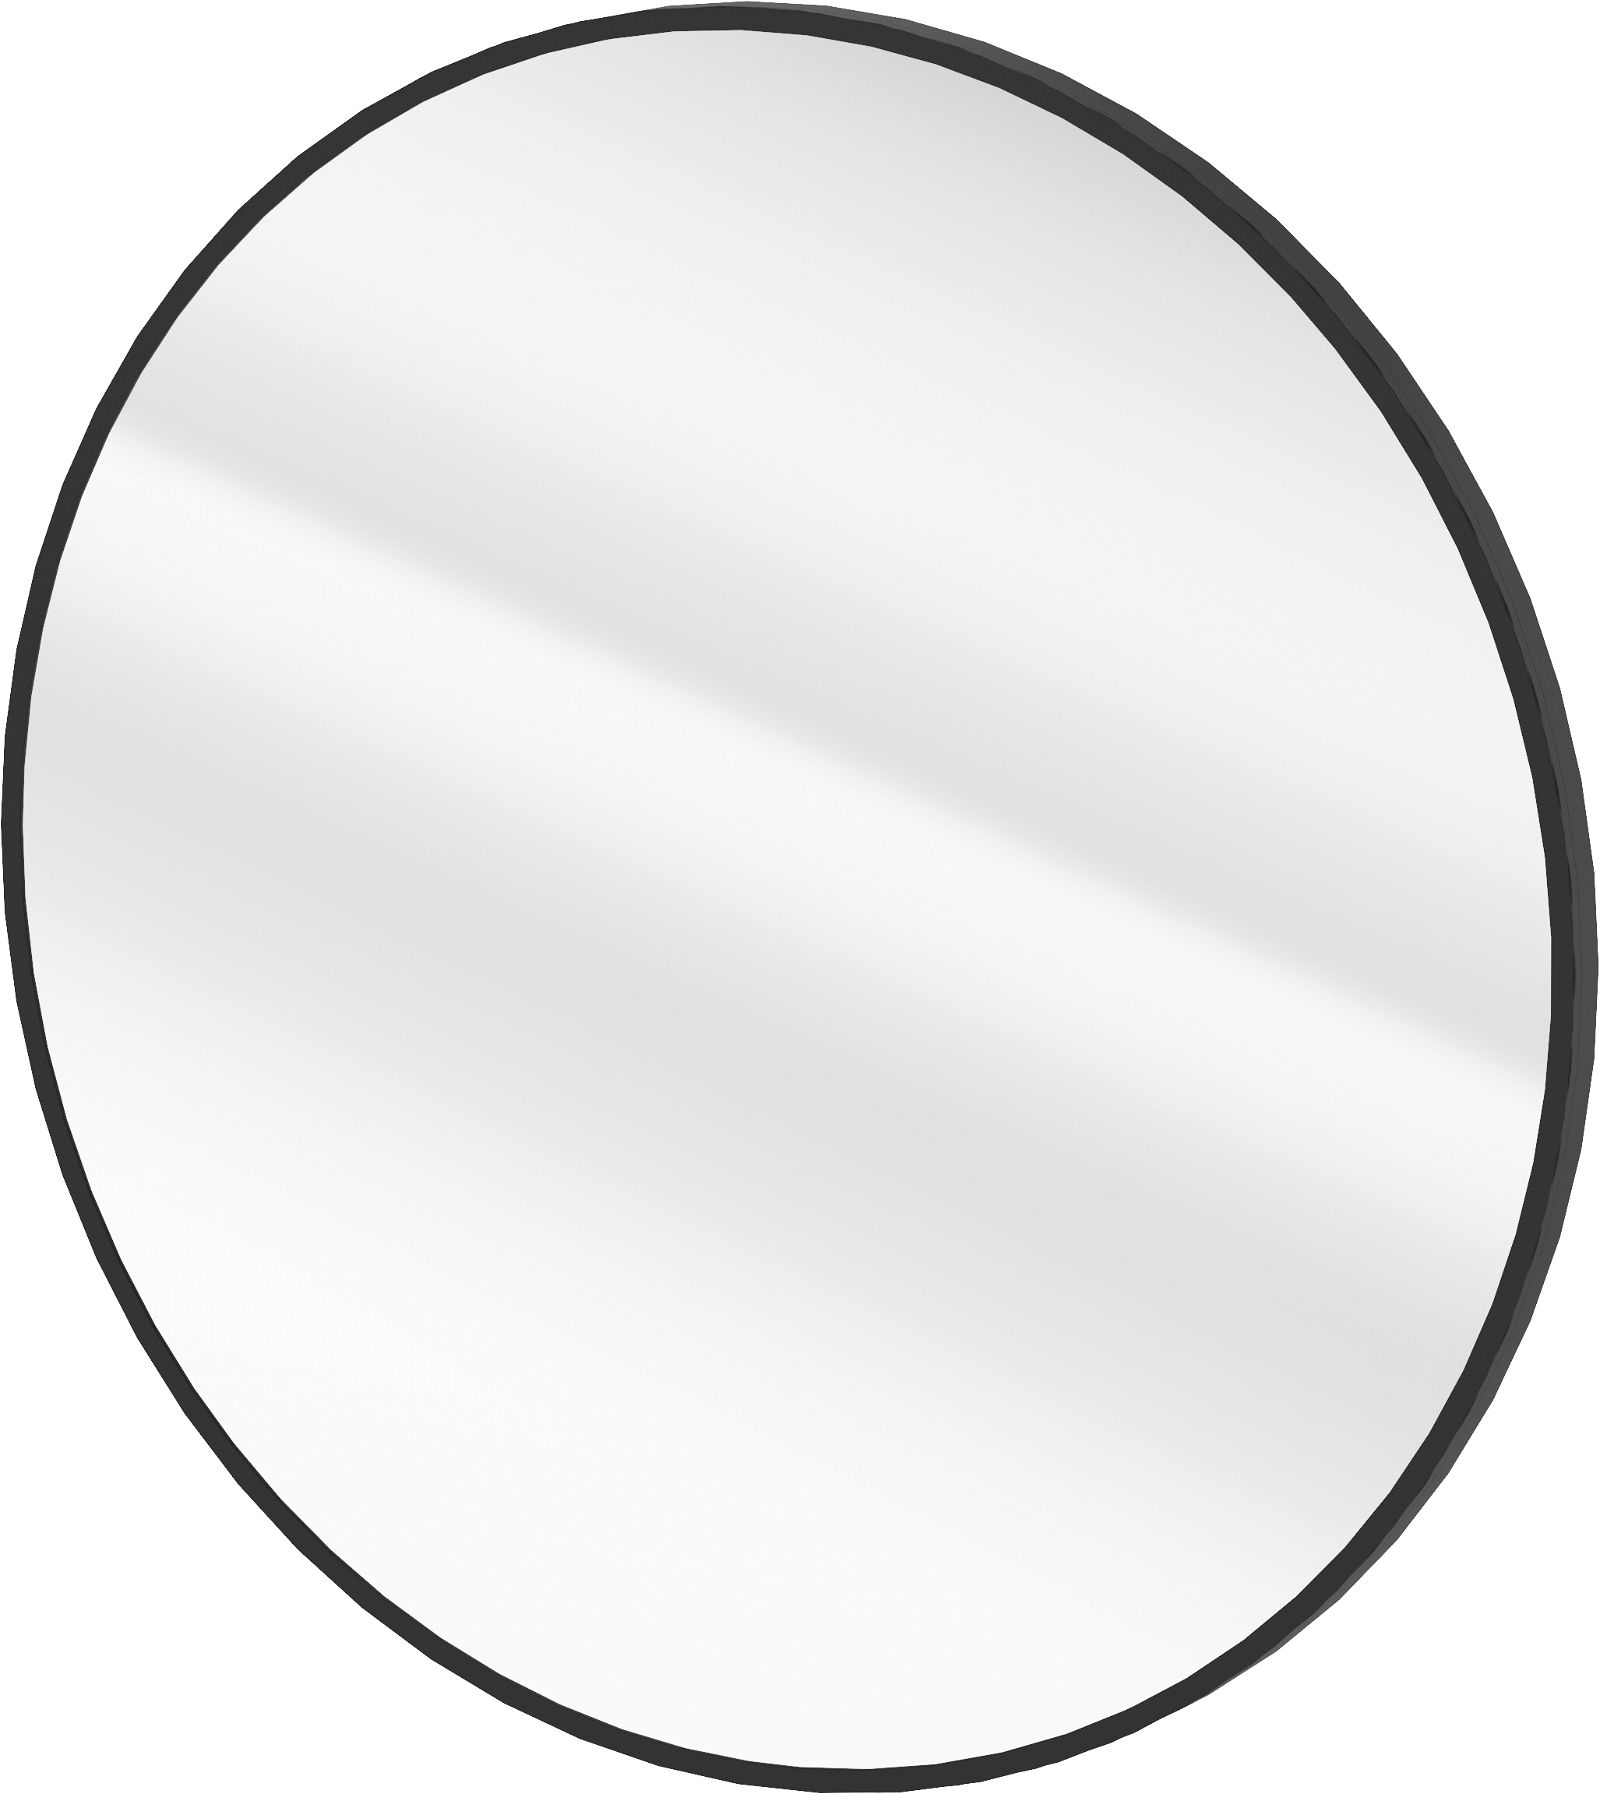 Hänge-spiegel, in einem Rahmen - rund - ADR_N831 - Główne zdjęcie produktowe